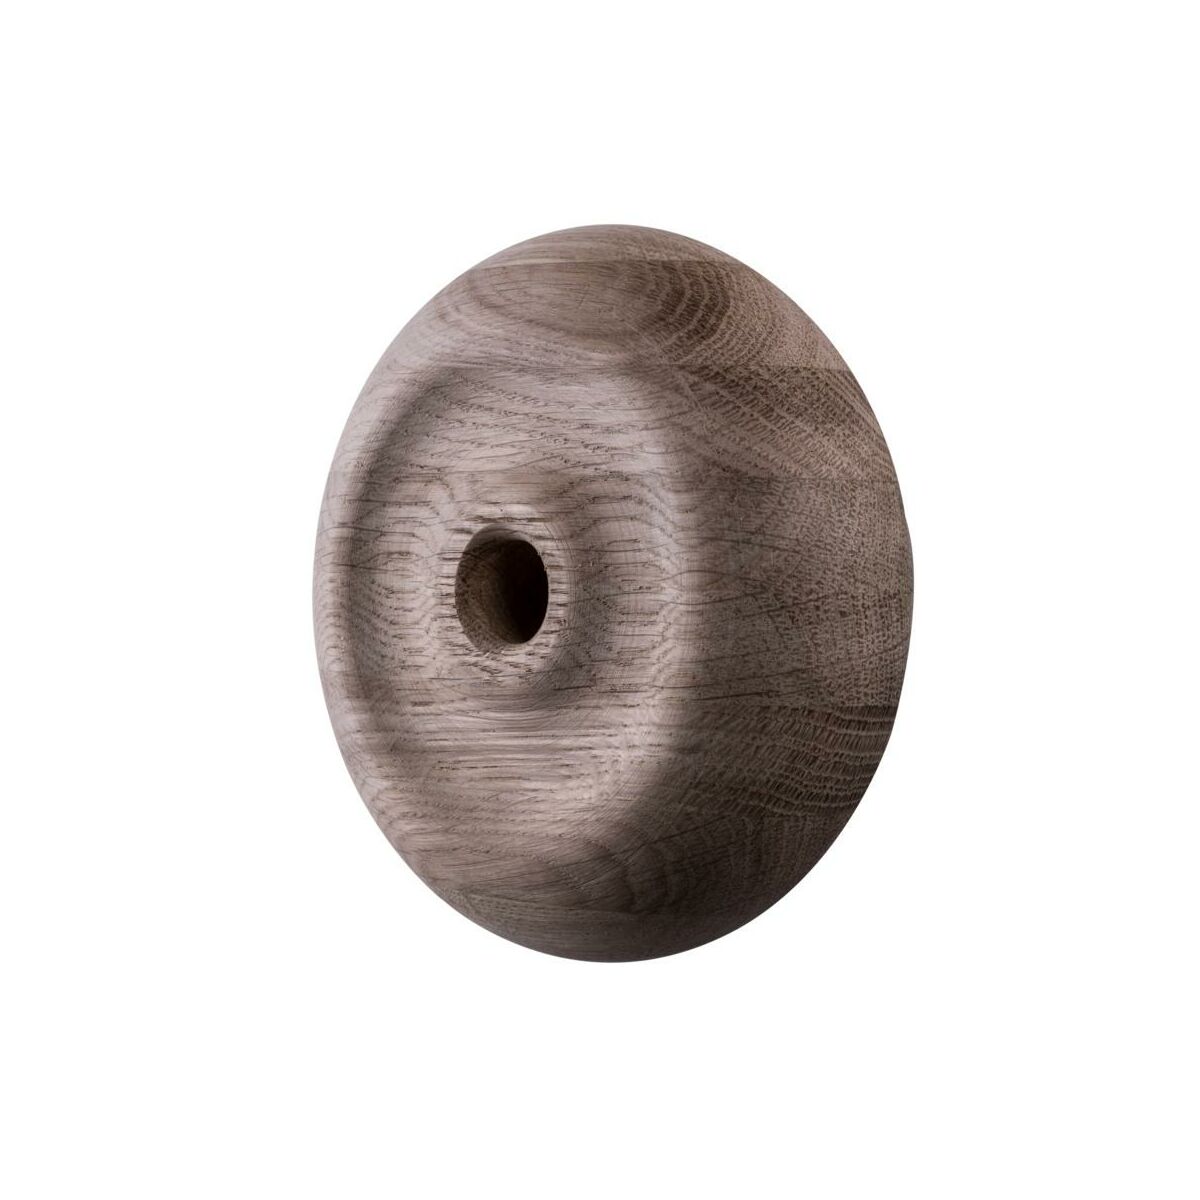 Zakończenie poręczy drewniane dębowe surowe okrągłe 62x50 mm Kornik